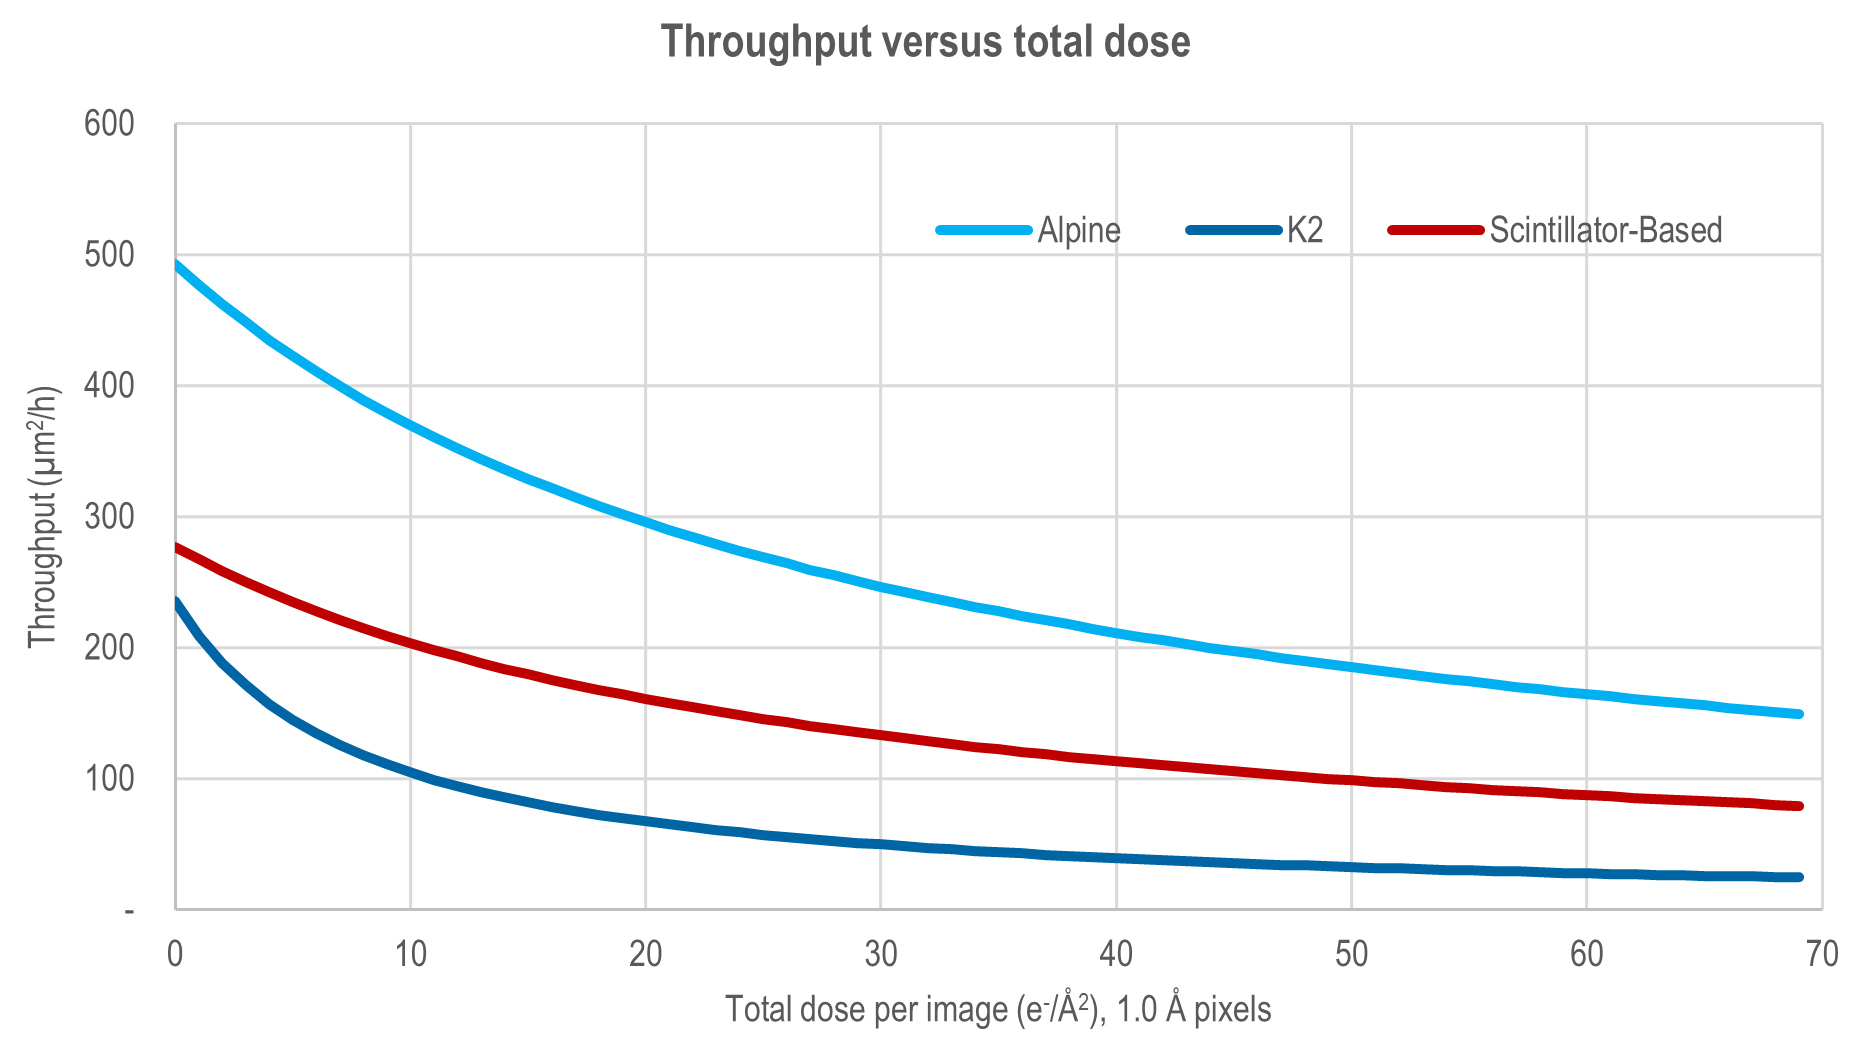 Throughput versus total dose comparison.